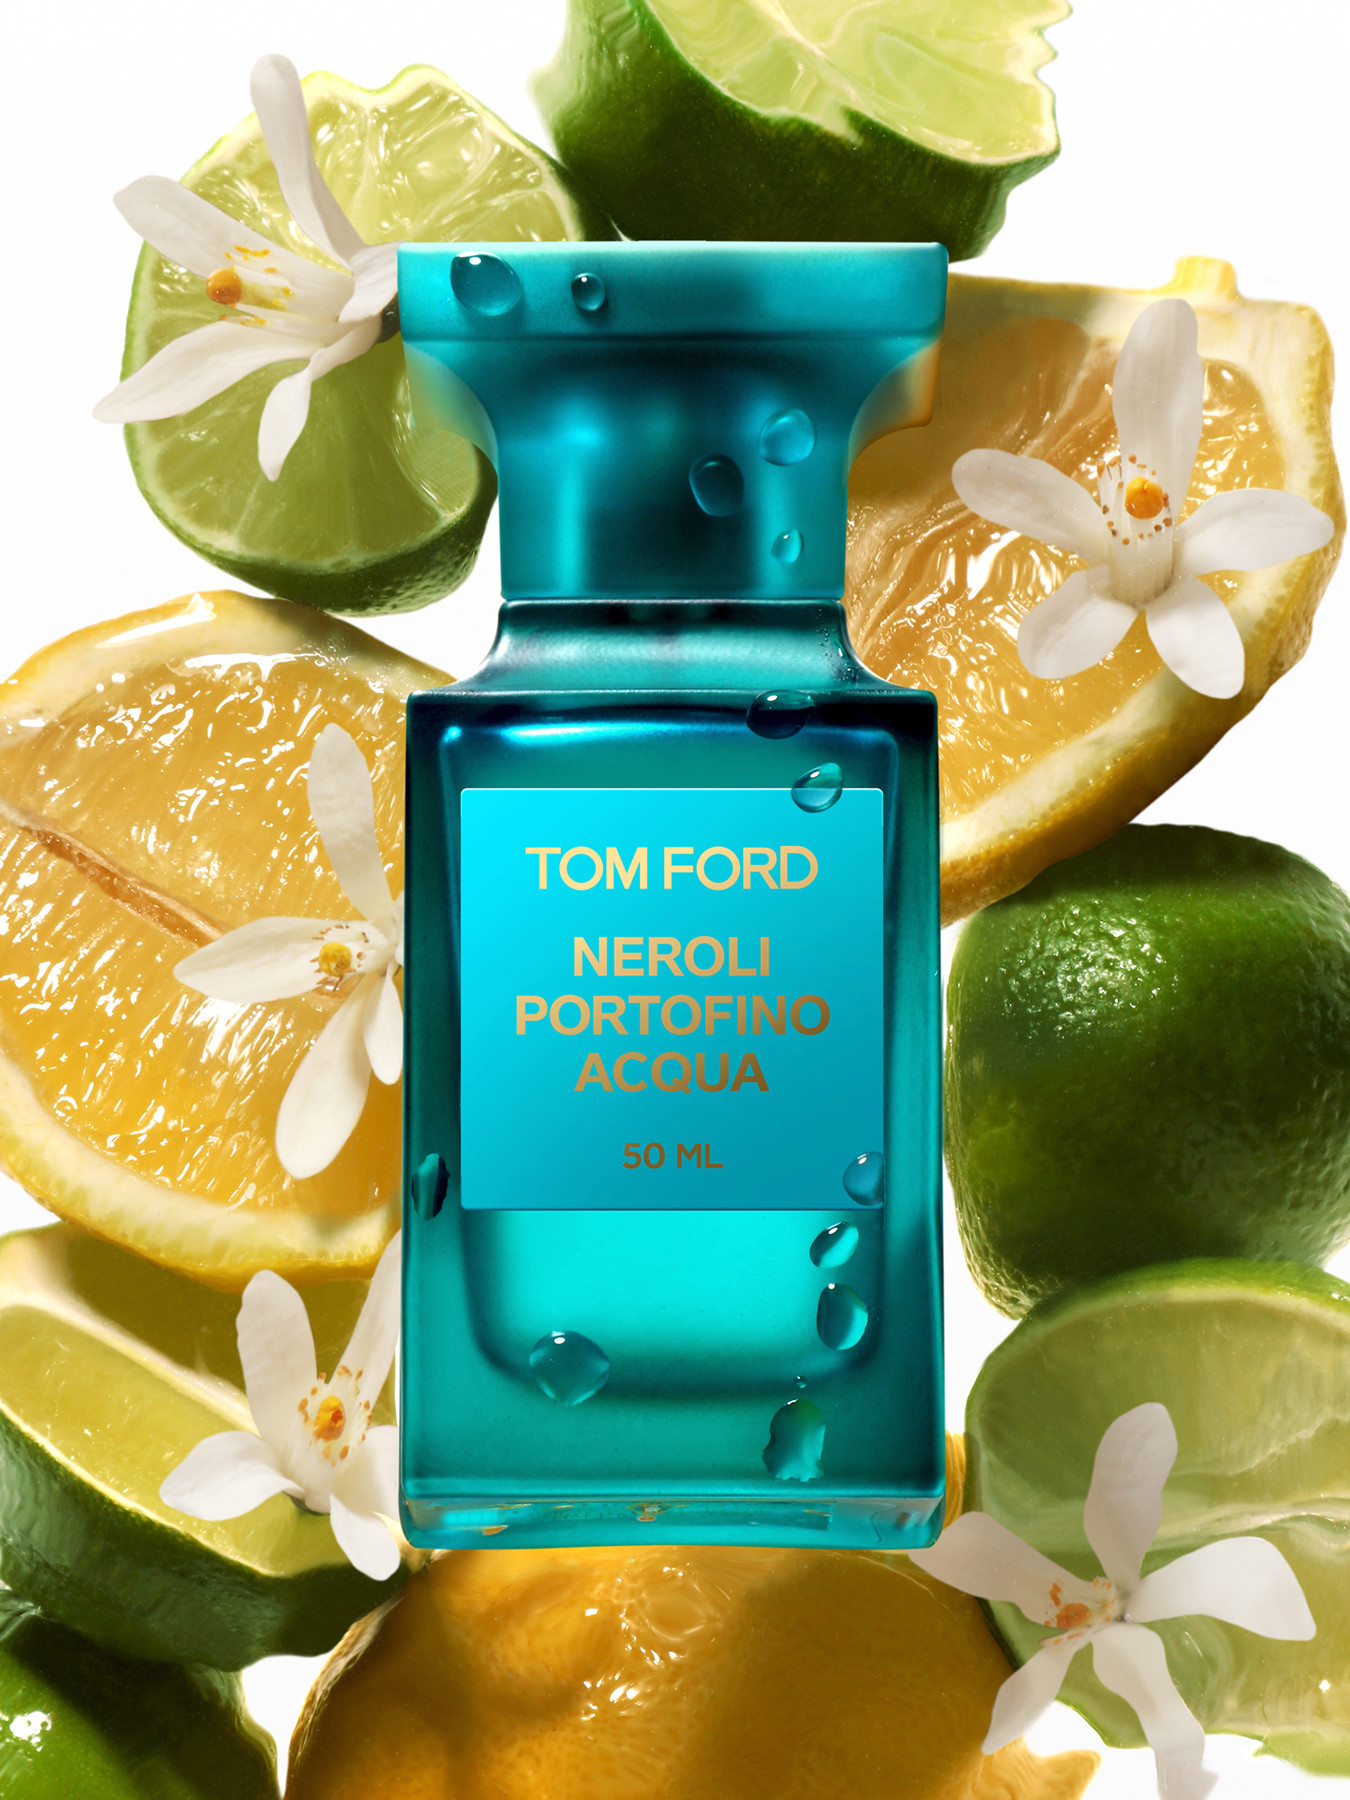 Tom Ford Neroli Portofino Acqua Eau de Parfum 50 ml | Fenwick